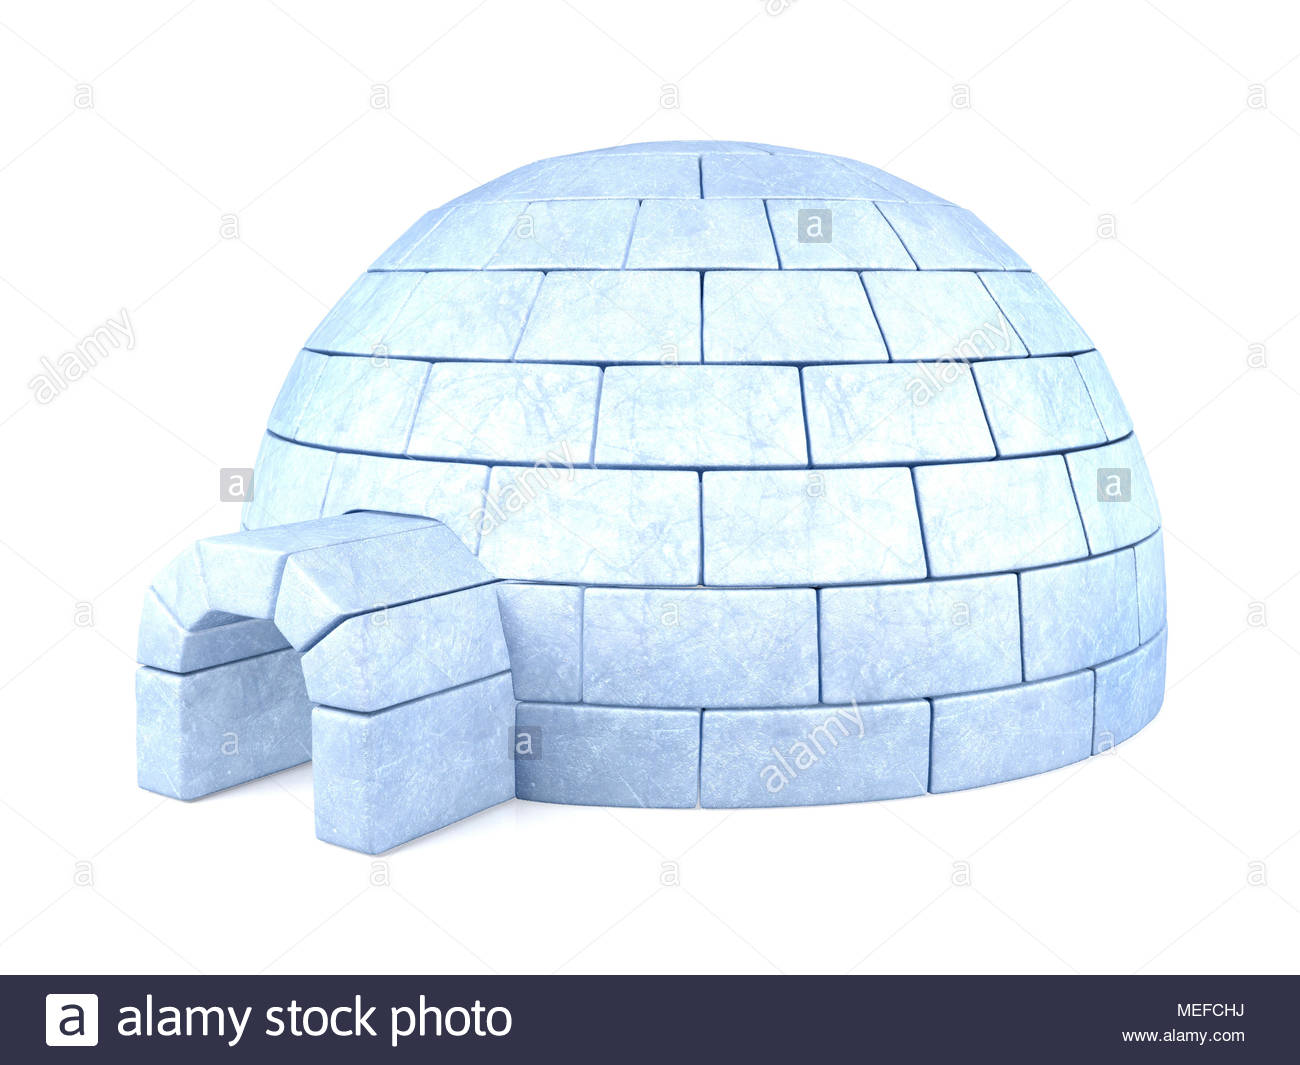 Iced Igloo Isolated On White Background Stock Photo